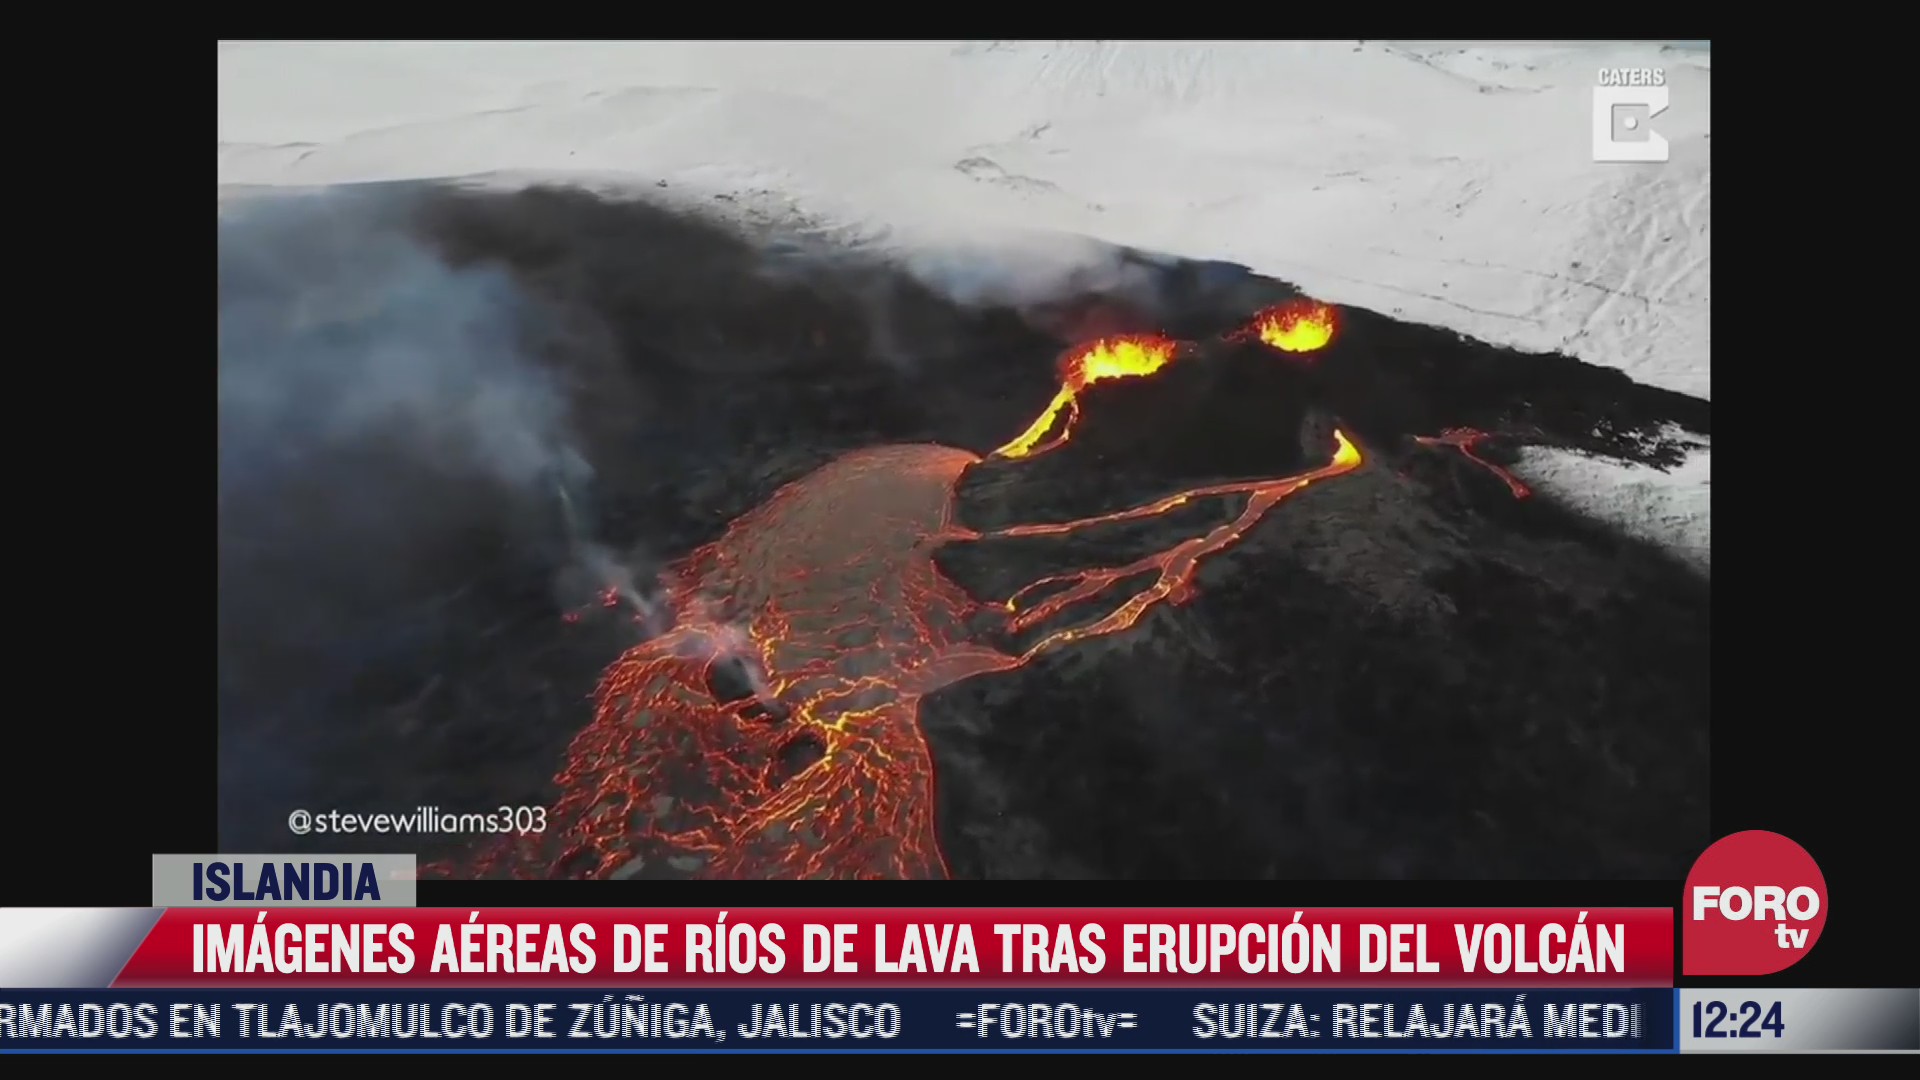 dron capta espectaculares imagenes de erupcion de volcan en islandia